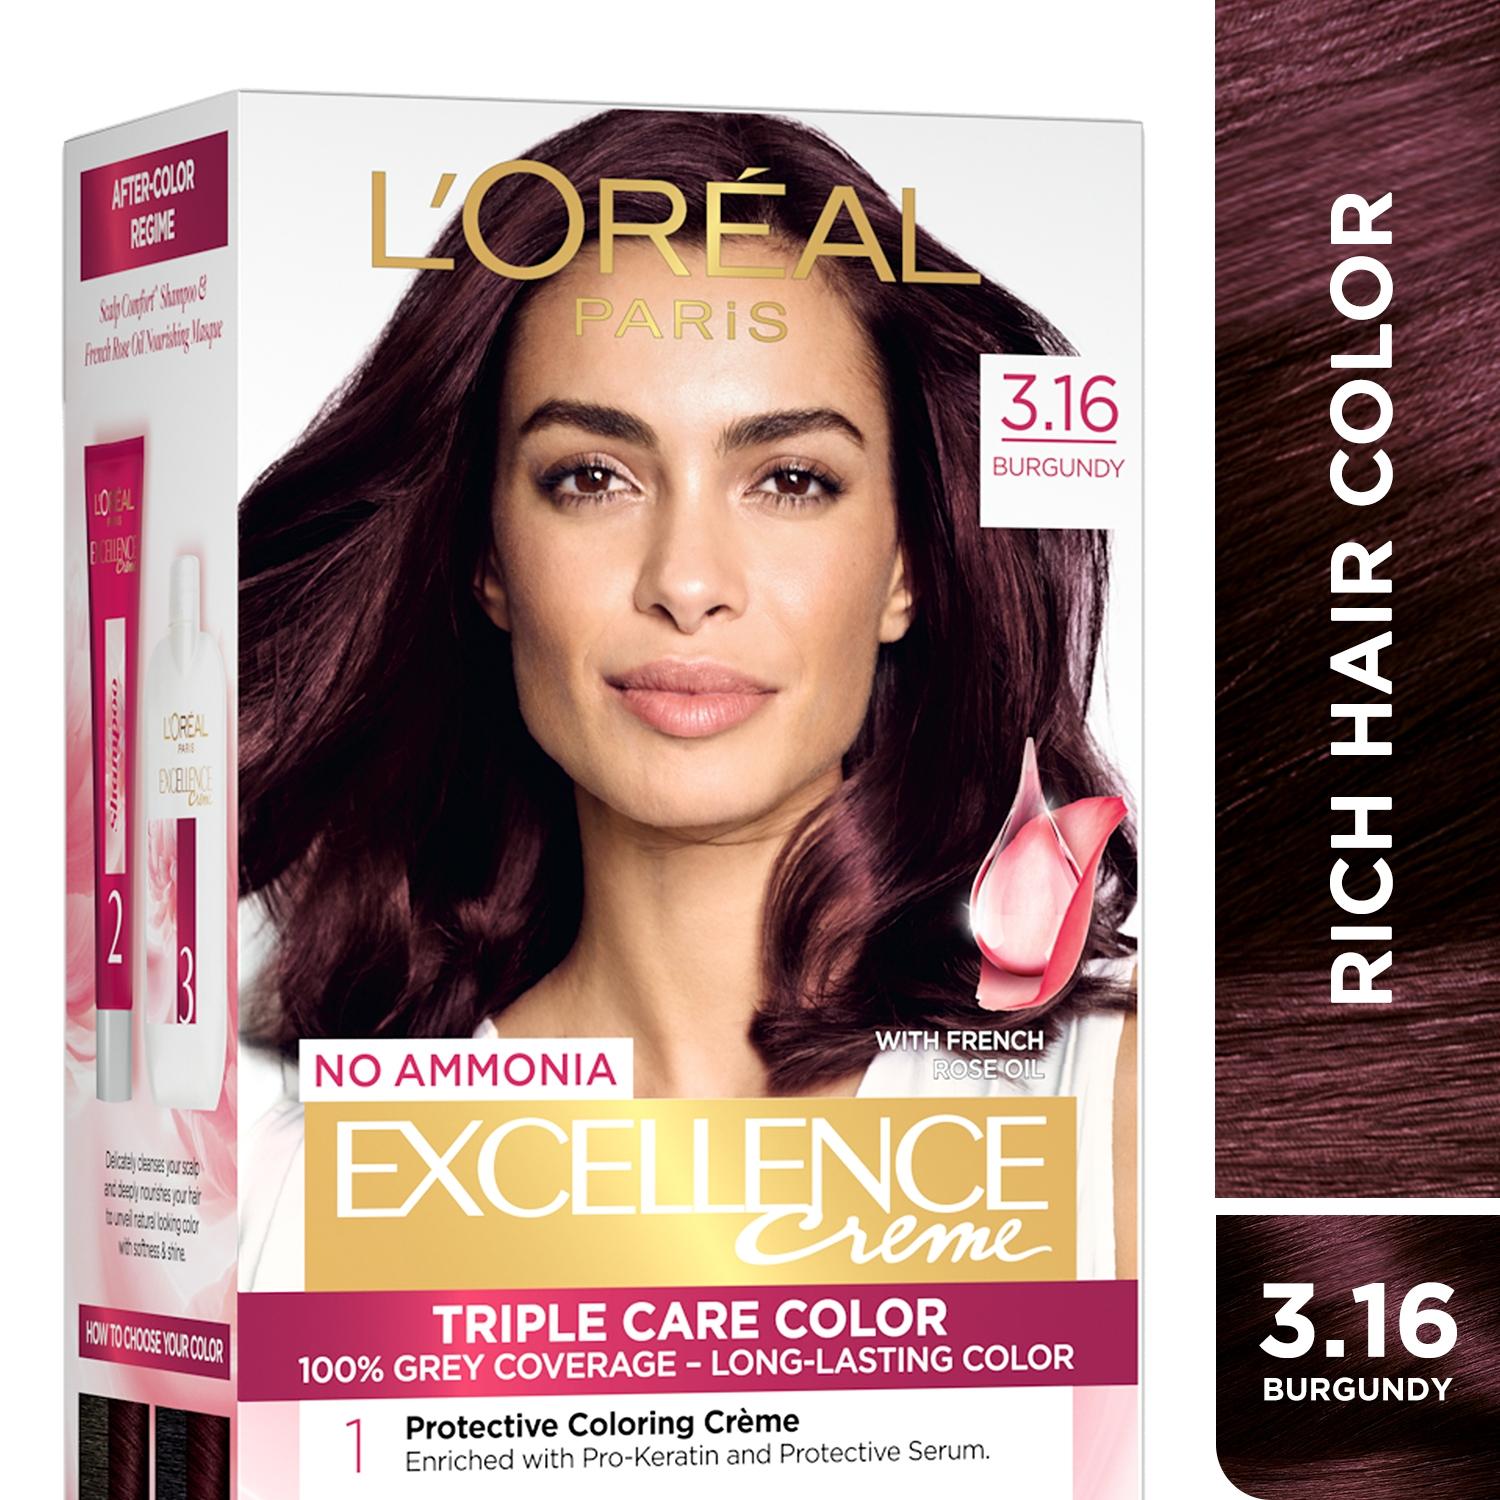 l'oreal-paris-excellence-creme-triple-care-hair-color---3.16-burgundy-(100g+72ml)